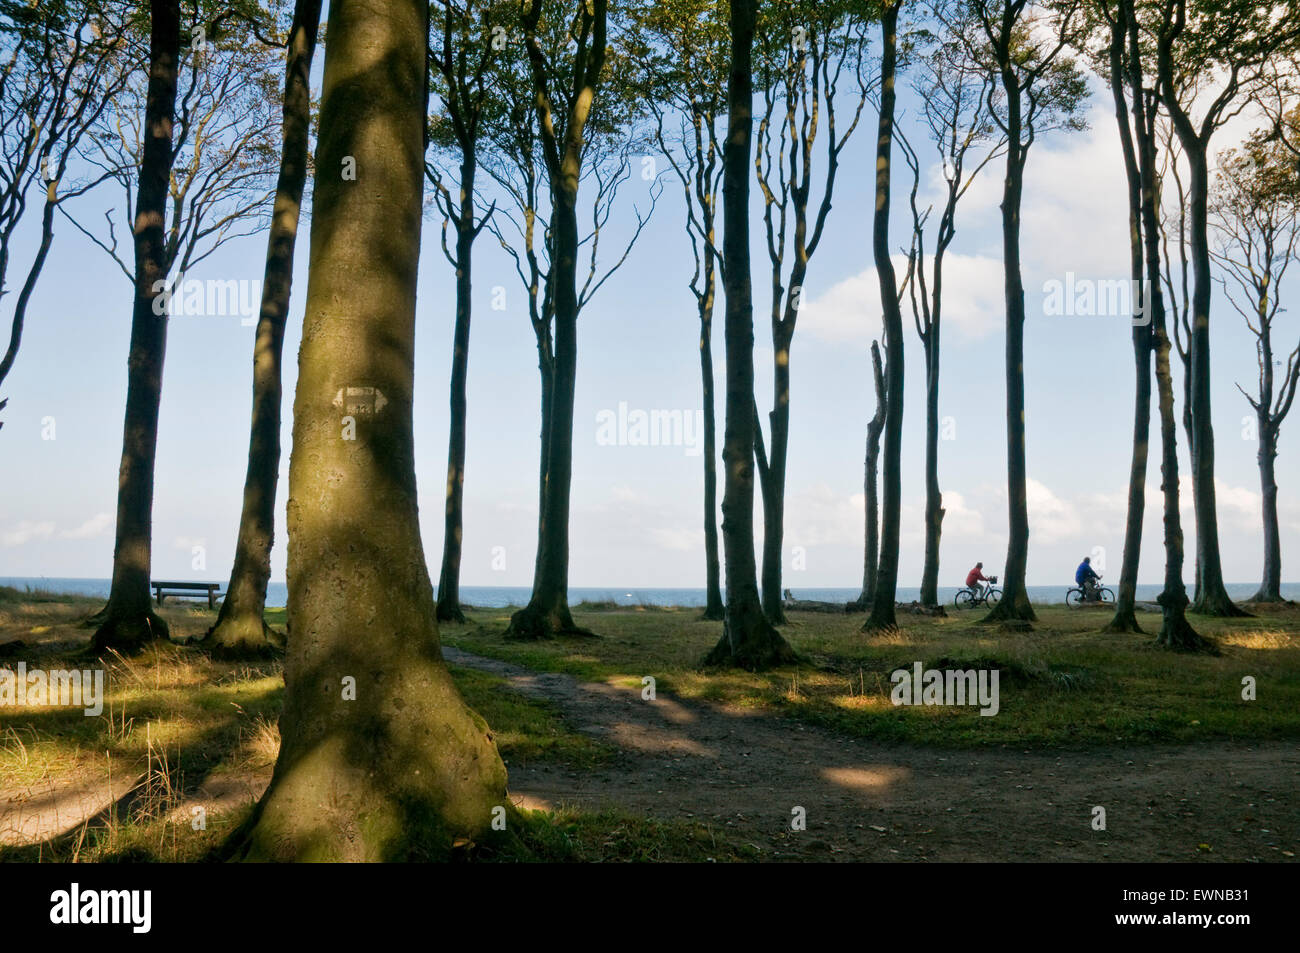 Forêt de hêtres, l'esprit bois, bois fantôme, à la mer baltique à Rostock, Mecklembourg-Poméranie-Occidentale, Allemagne, Europe Banque D'Images